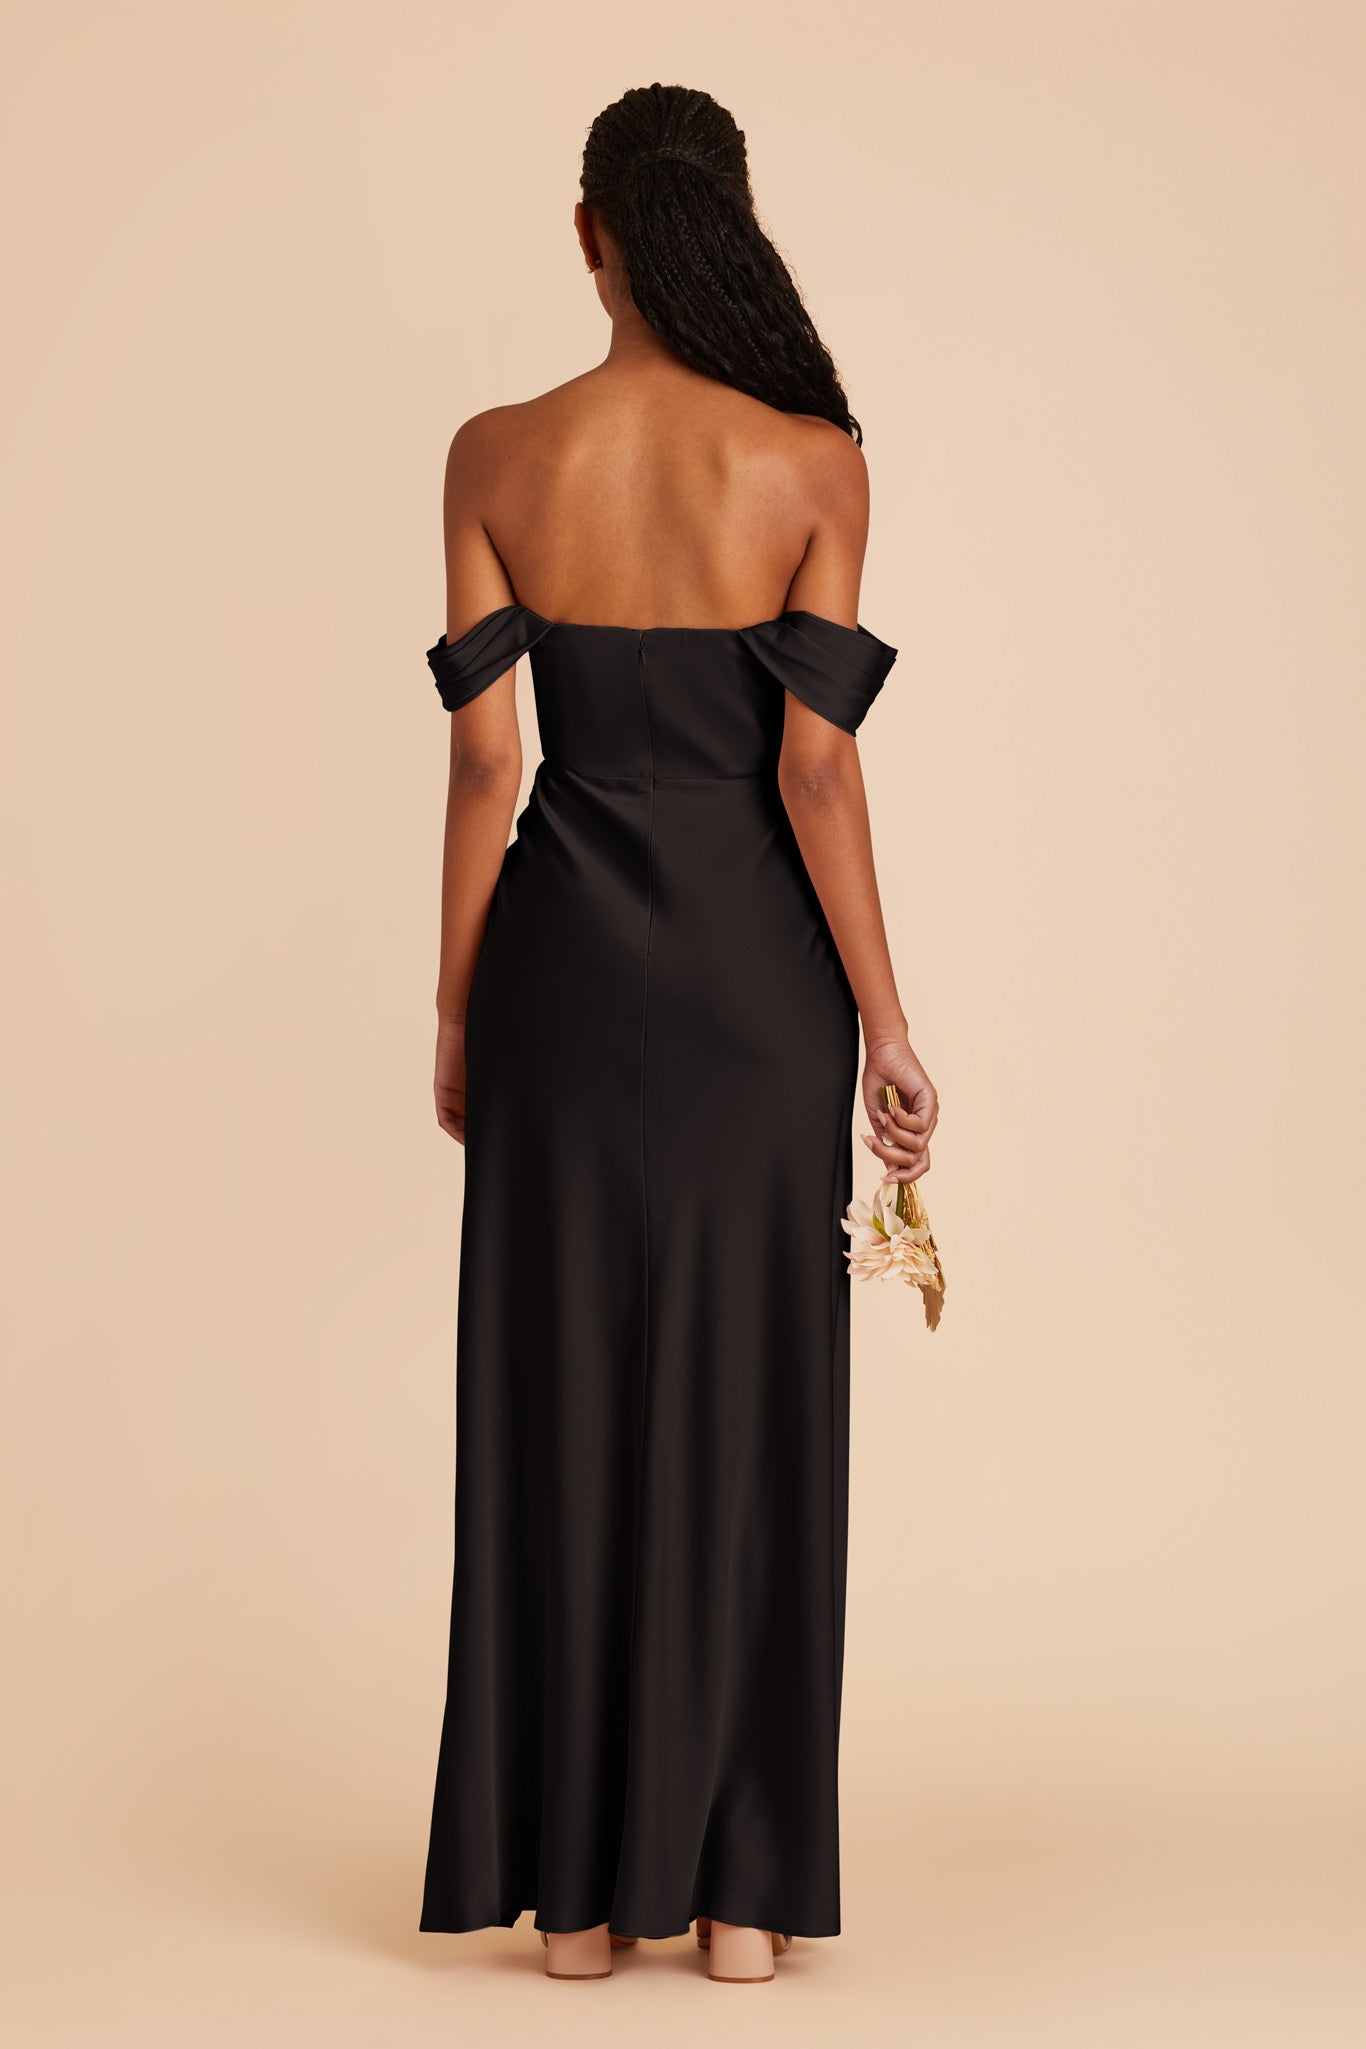 Black Mia Matte Satin Dress by Birdy Grey